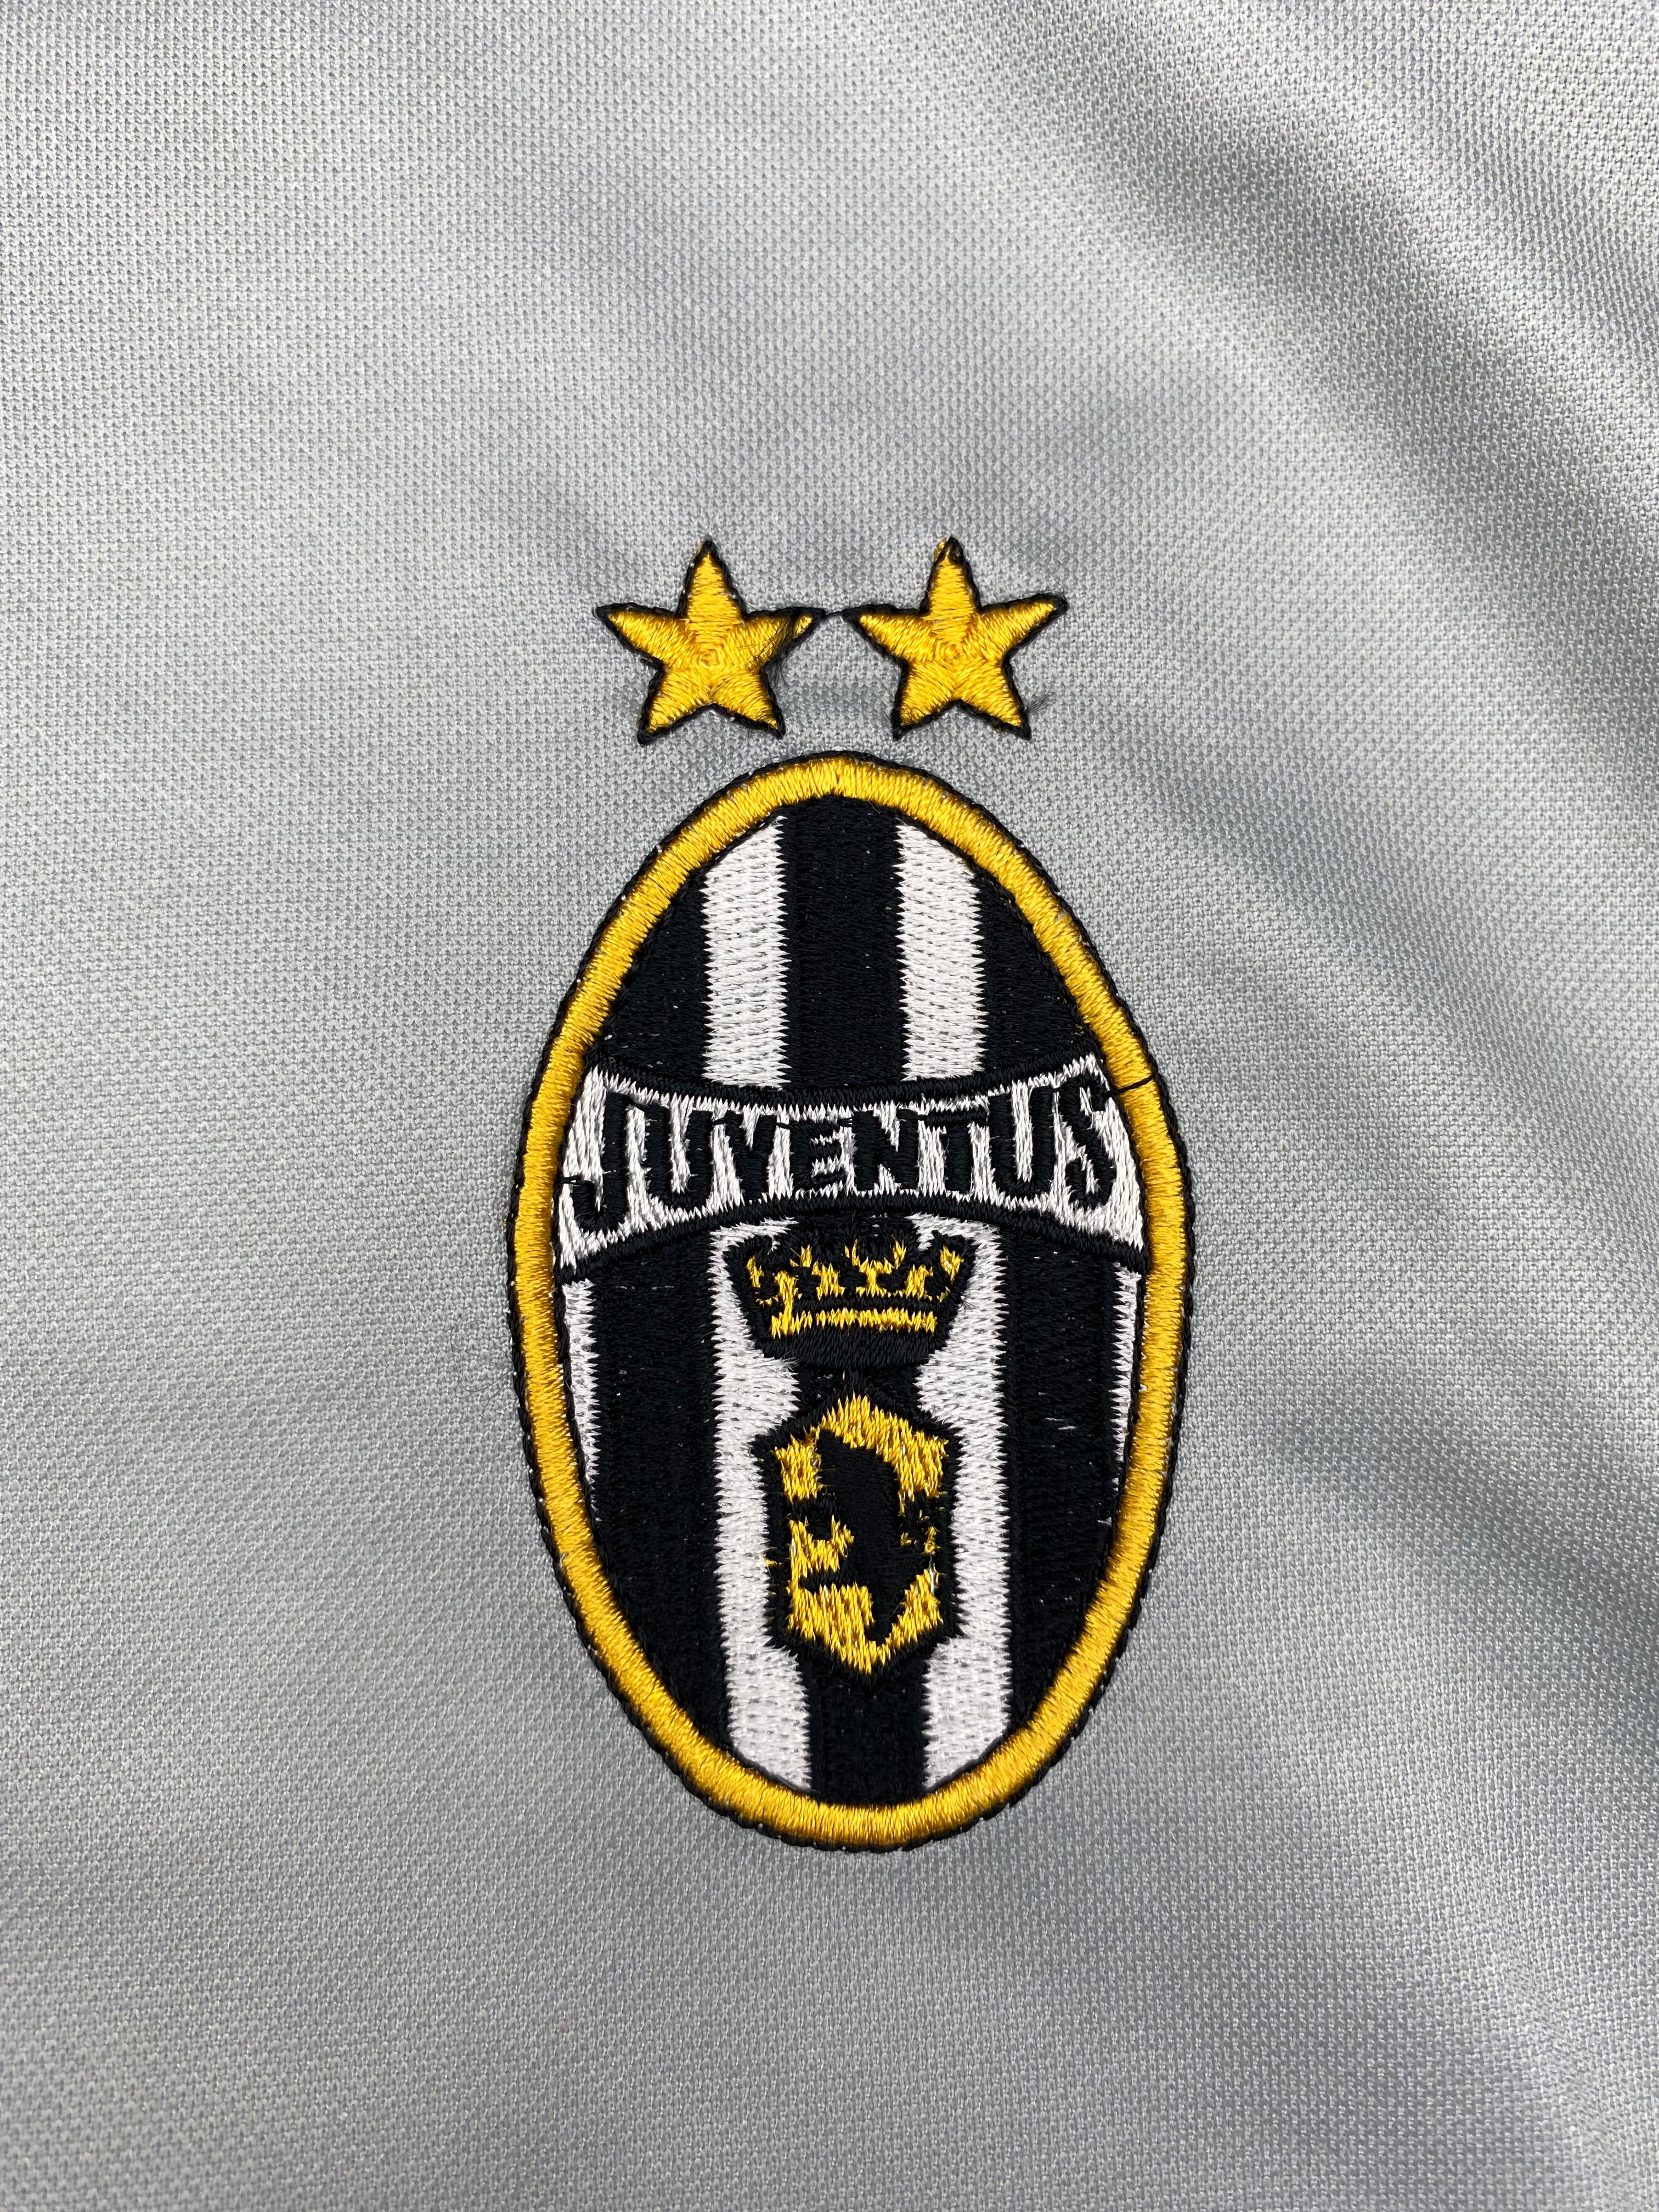 2000/01 Juventus Third Shirt (M) 8.5/10